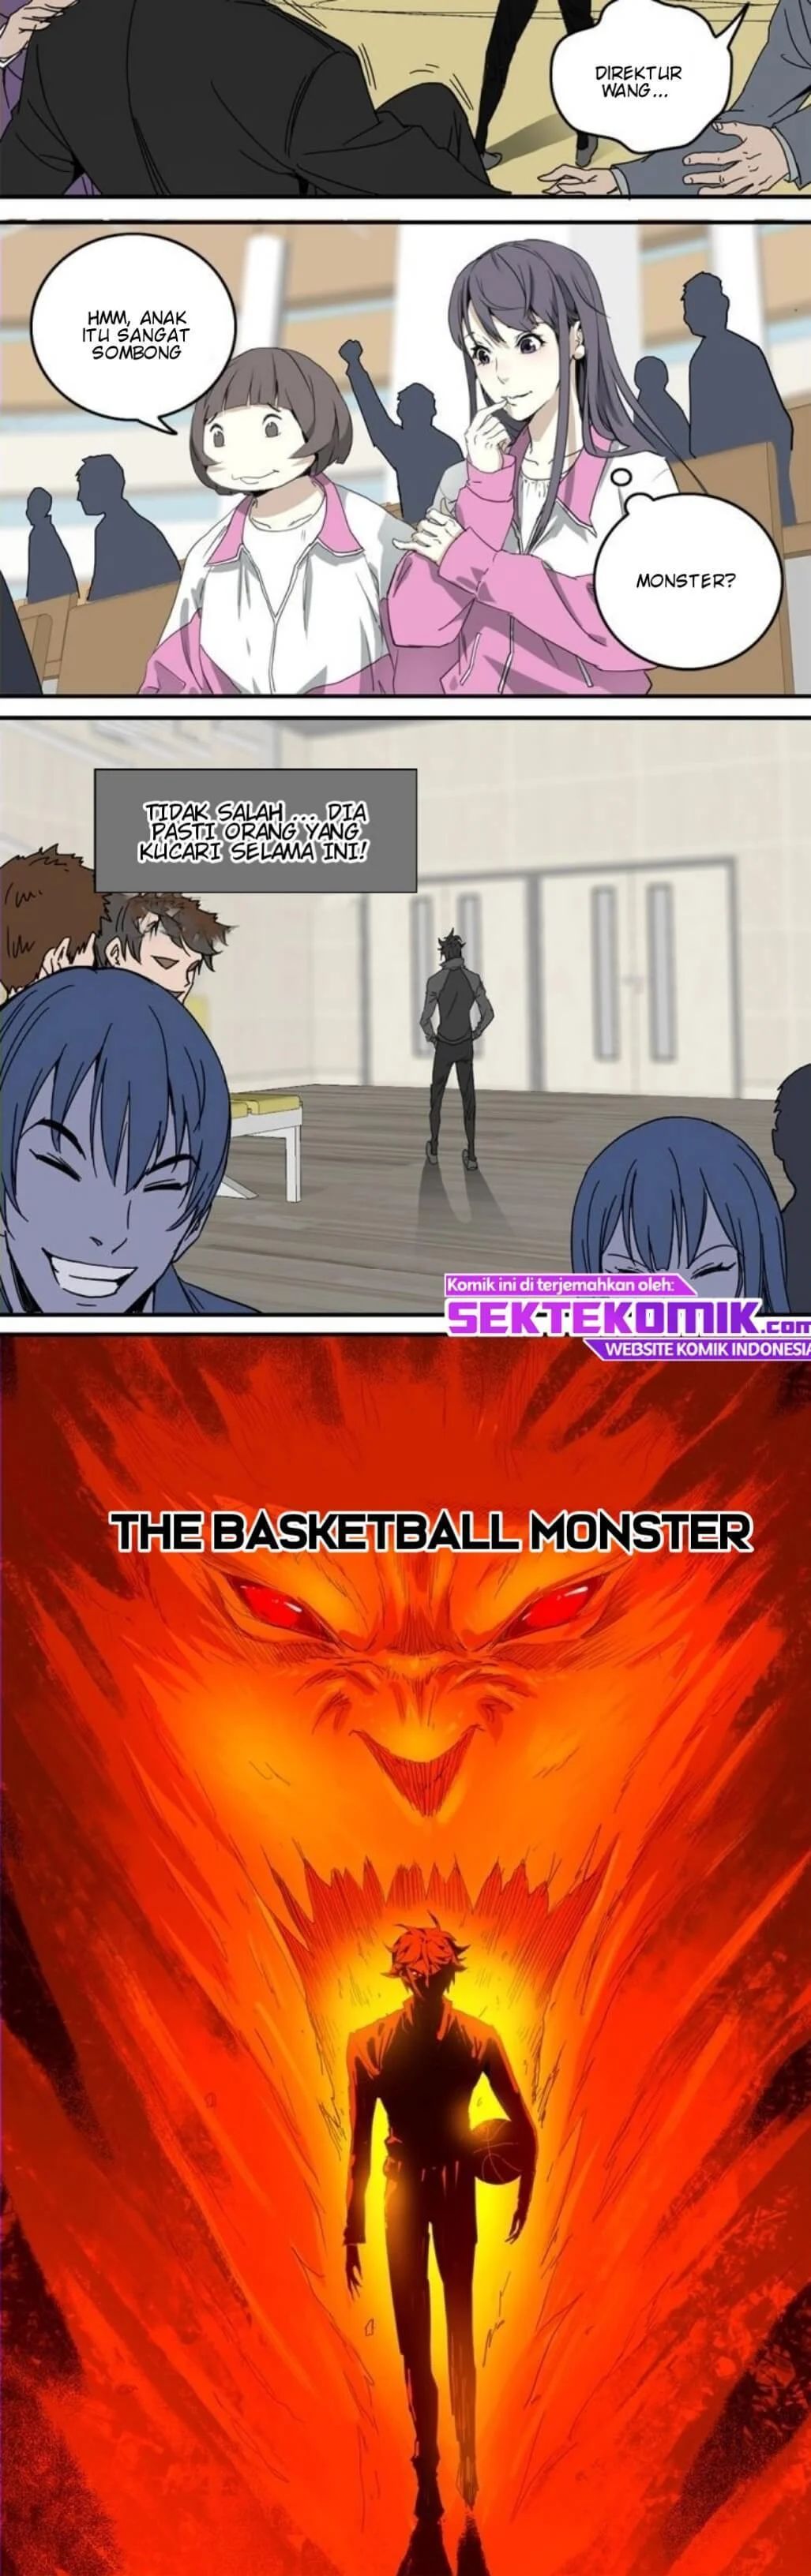 Basketball Monster Chapter 1